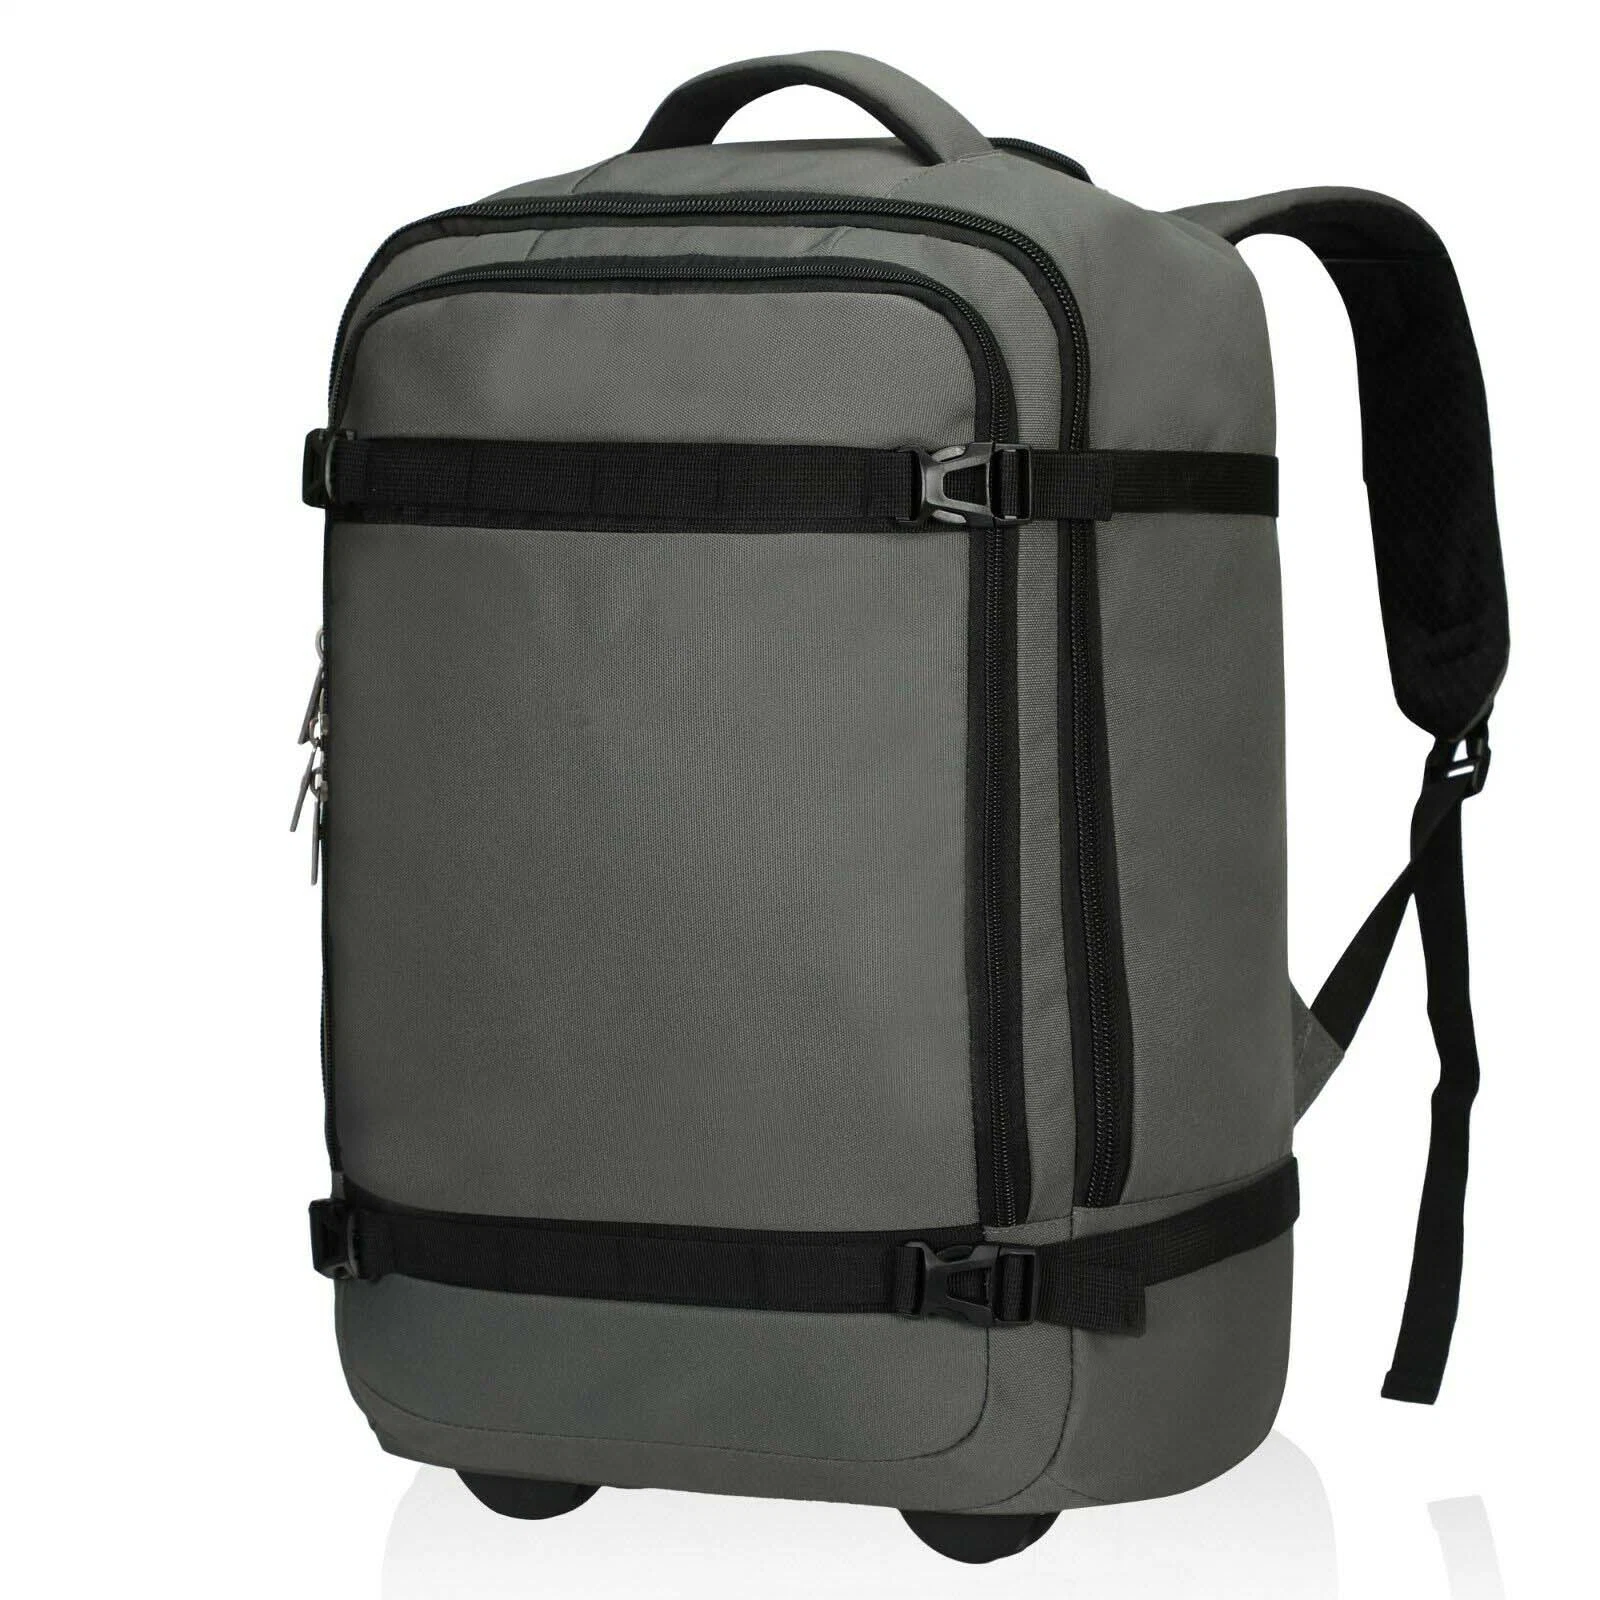 42L Rolling Wheeled Backpack Bag; Travel Bag